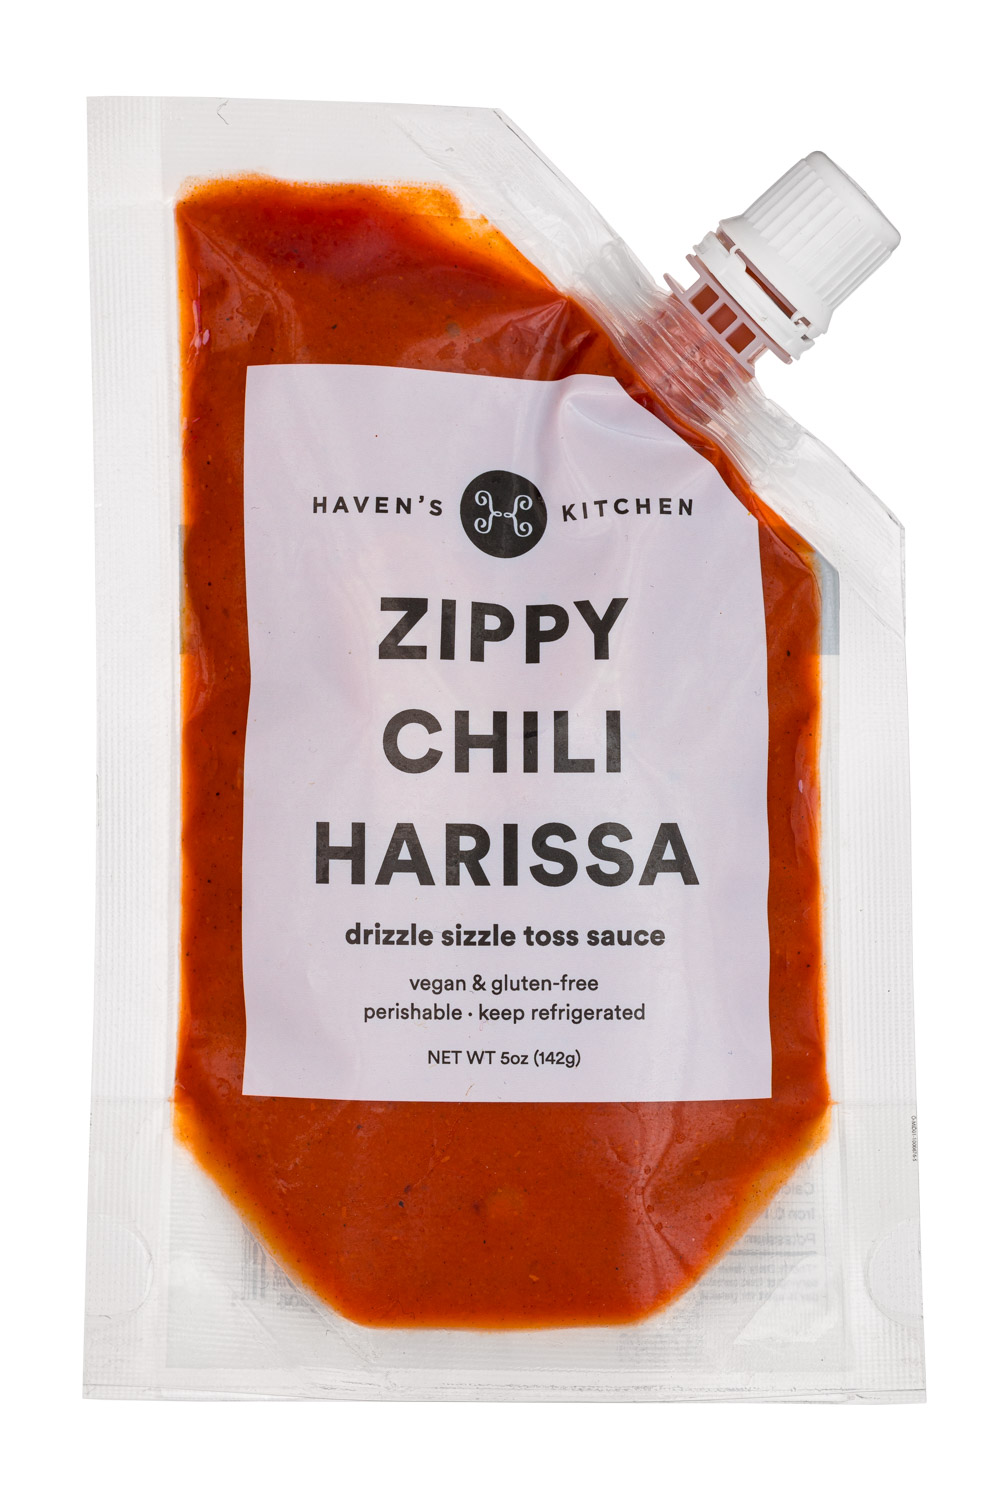 Zippy Chili Harissa